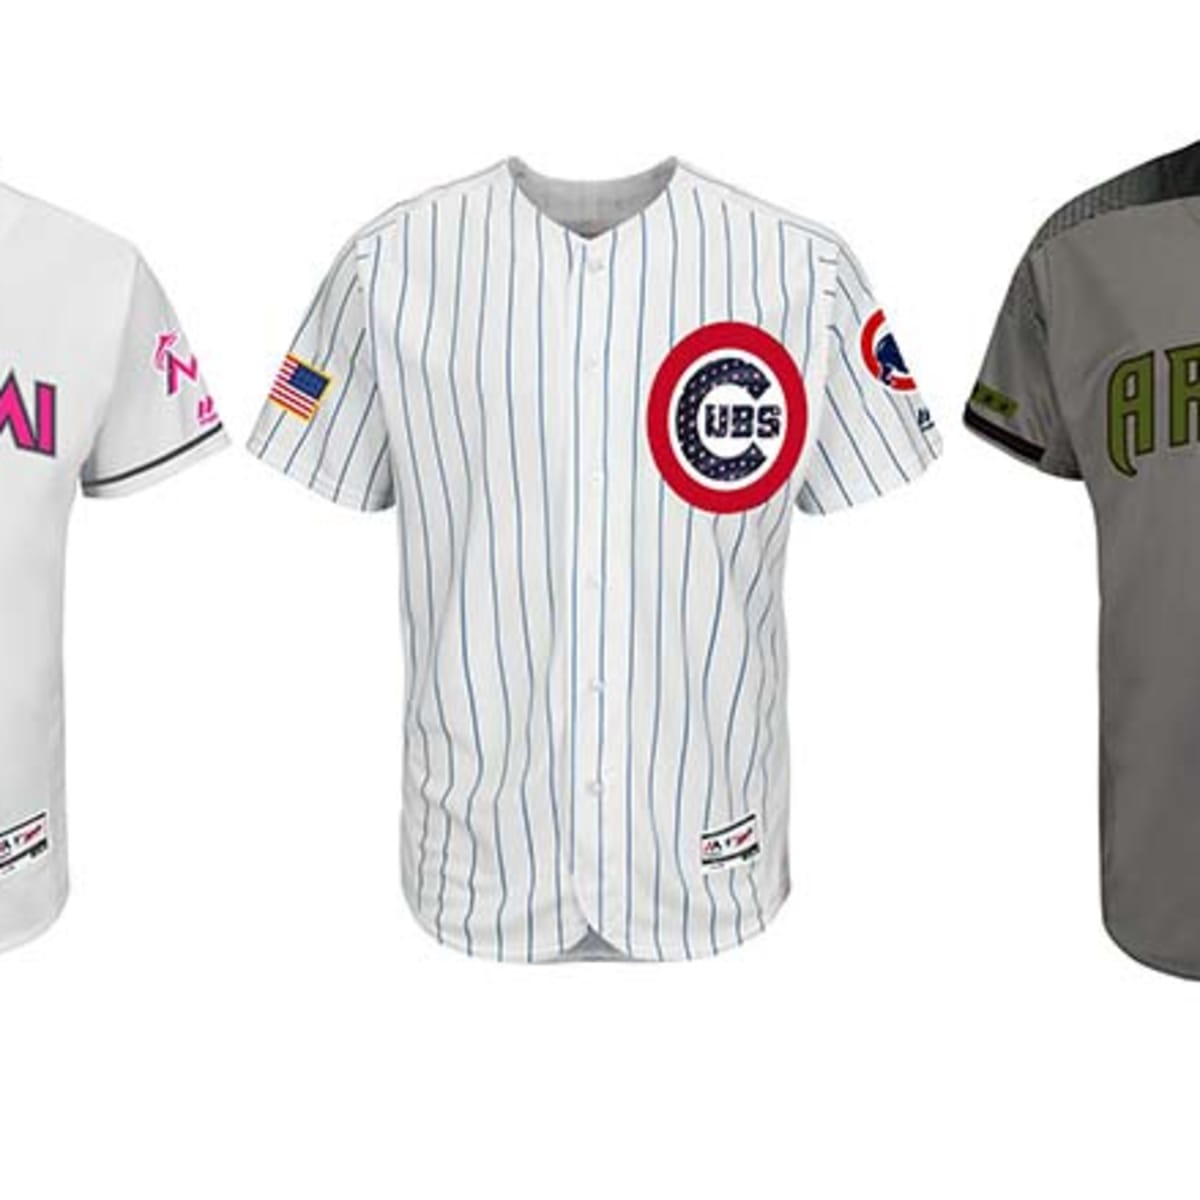 MLB Announces 2017 Special Event Uniforms - Gaslamp Ball